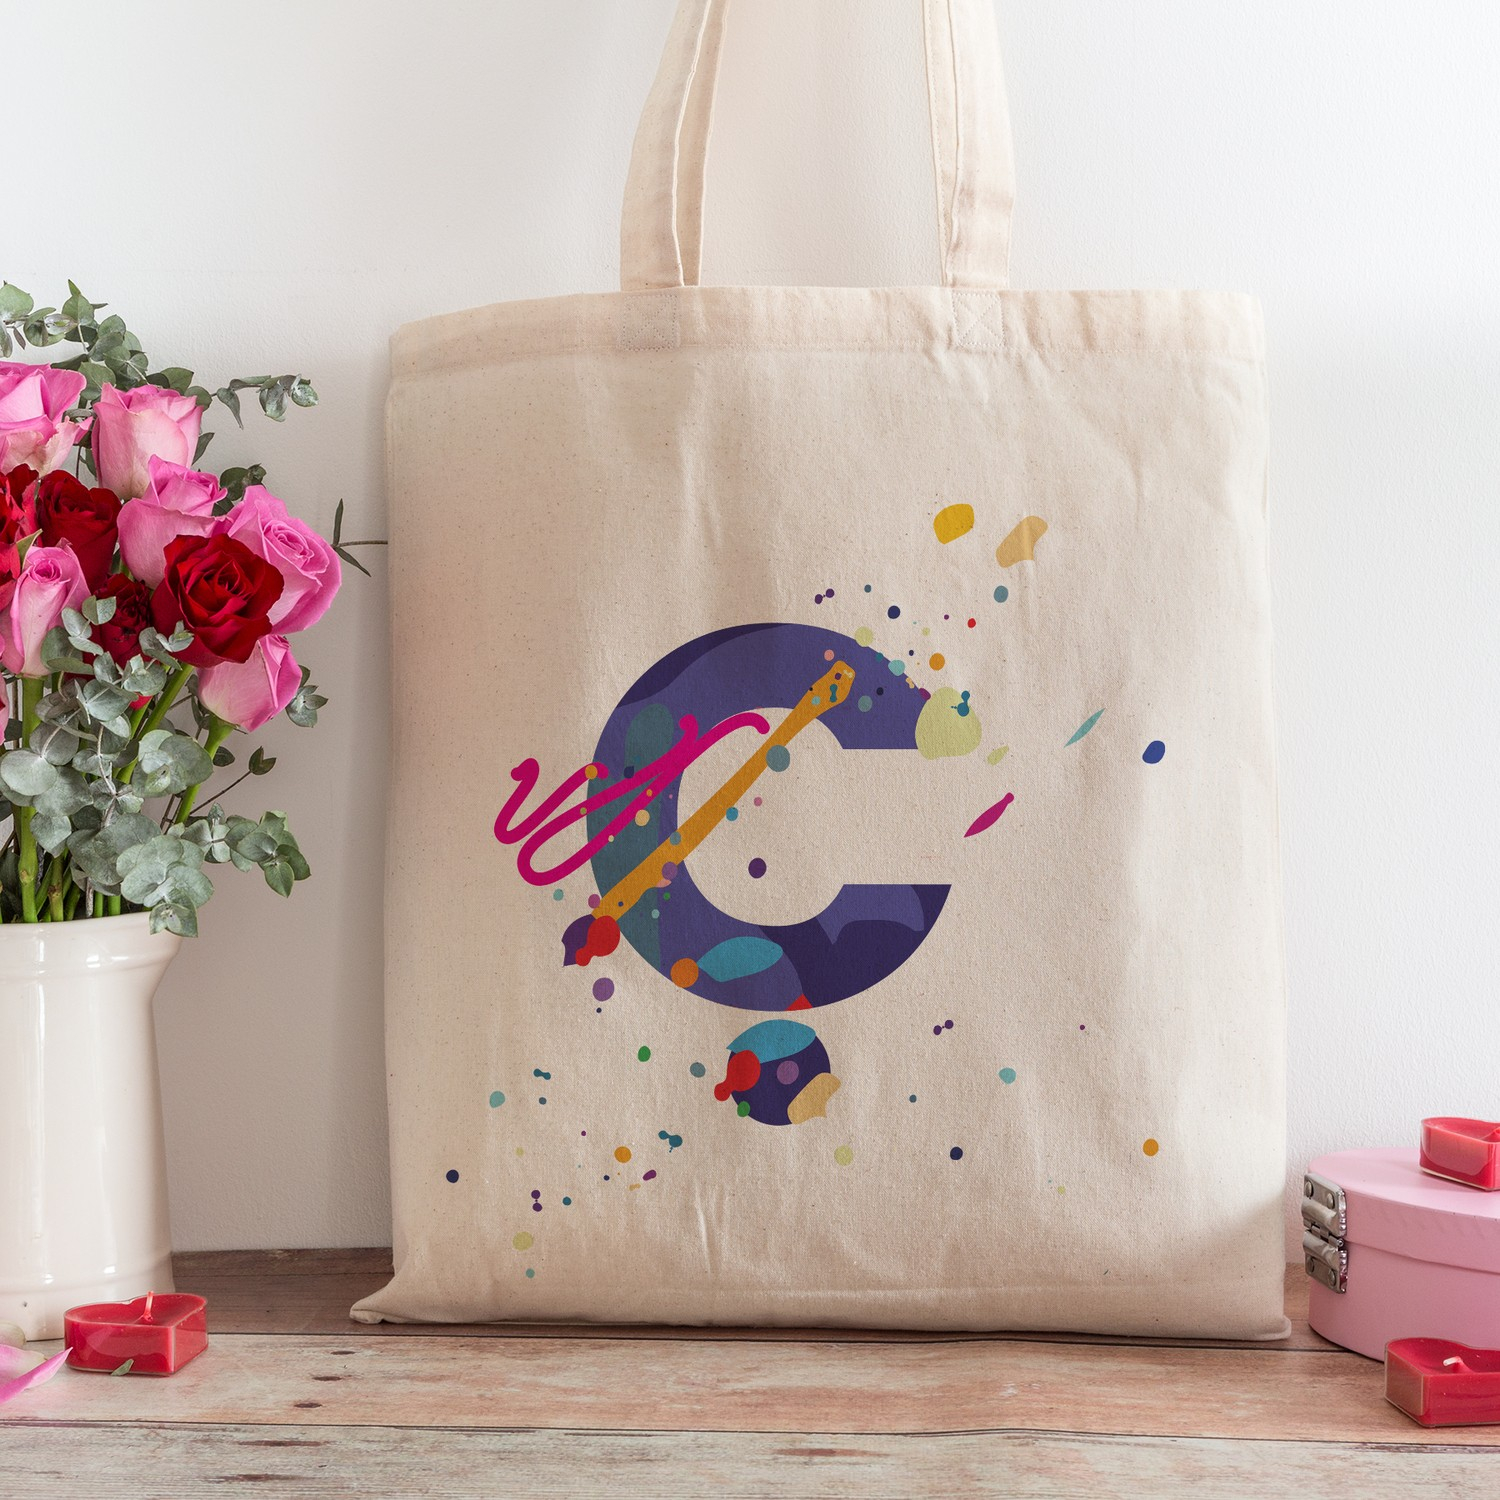 Пляжная сумка для покупок с дизайном буквы "С" из интернет-магазина подарков